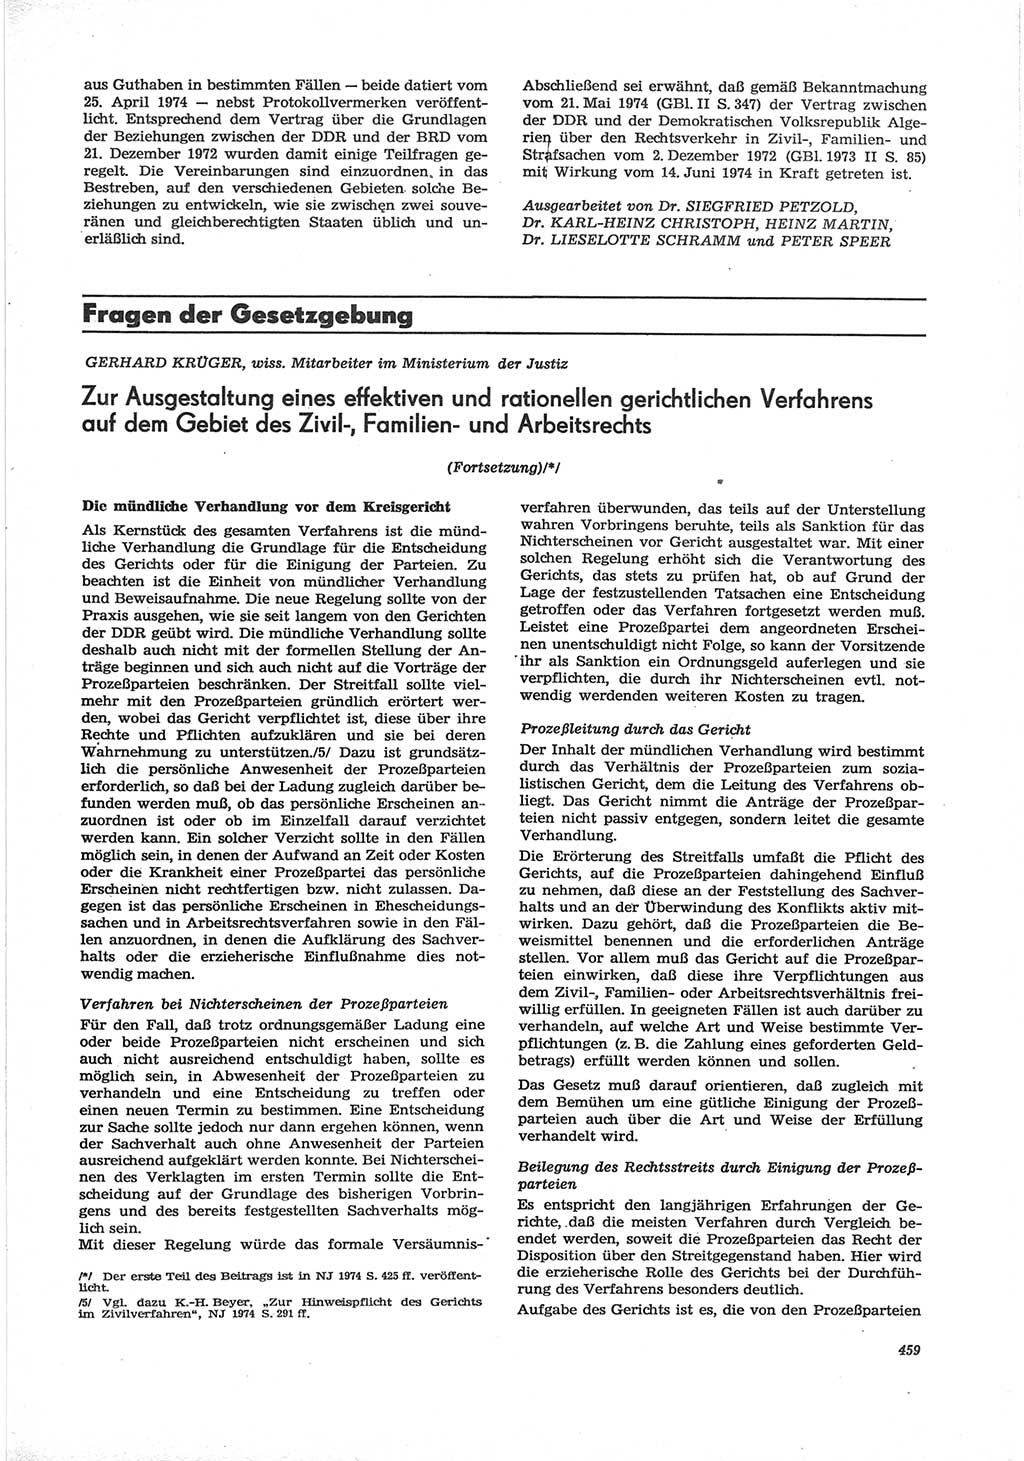 Neue Justiz (NJ), Zeitschrift für Recht und Rechtswissenschaft [Deutsche Demokratische Republik (DDR)], 28. Jahrgang 1974, Seite 459 (NJ DDR 1974, S. 459)